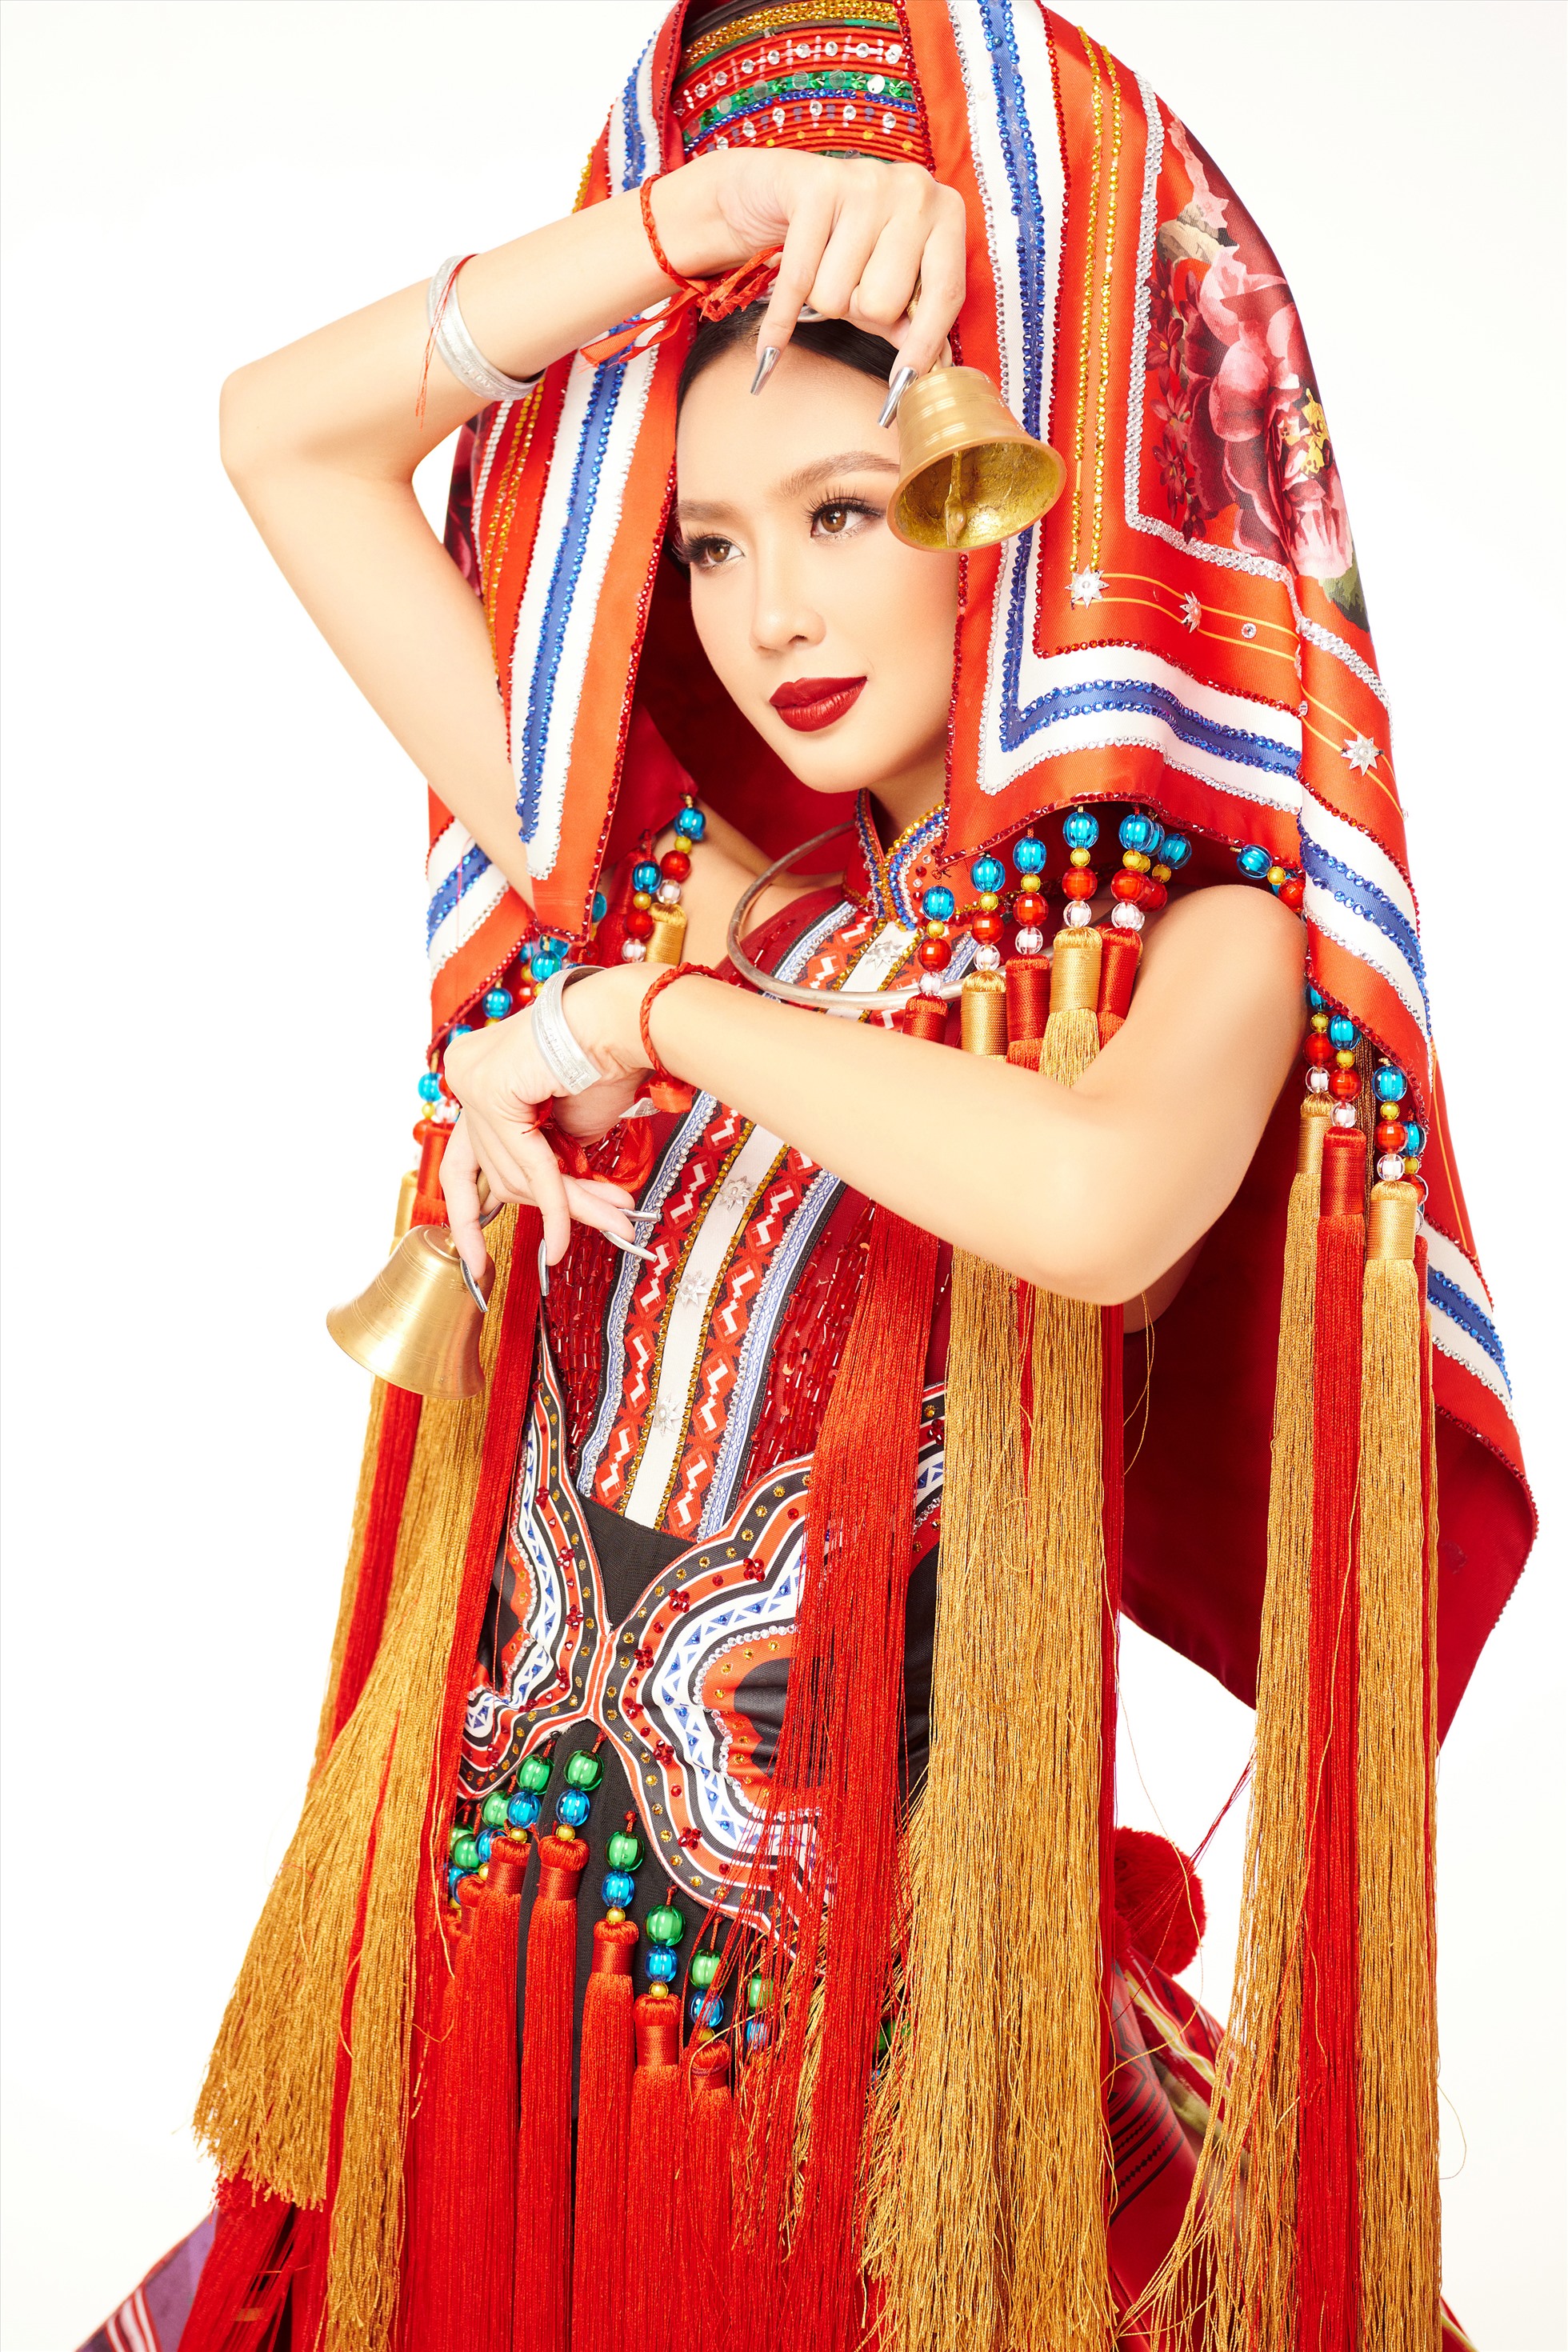 Thiết kế “Cô em Dao đỏ” được lấy cảm hứng từ trang phục cưới của phụ nữ Dao đỏ với những họa tiết thổ cẩm đặc trưng. Thiết kế có màu sắc rực rỡ, phần cánh mang hình ảnh về một nếp sống đời thường của người dân tộc Dao, cộng thêm phần tà rộng có thể điều chỉnh trong khi trình diễn.